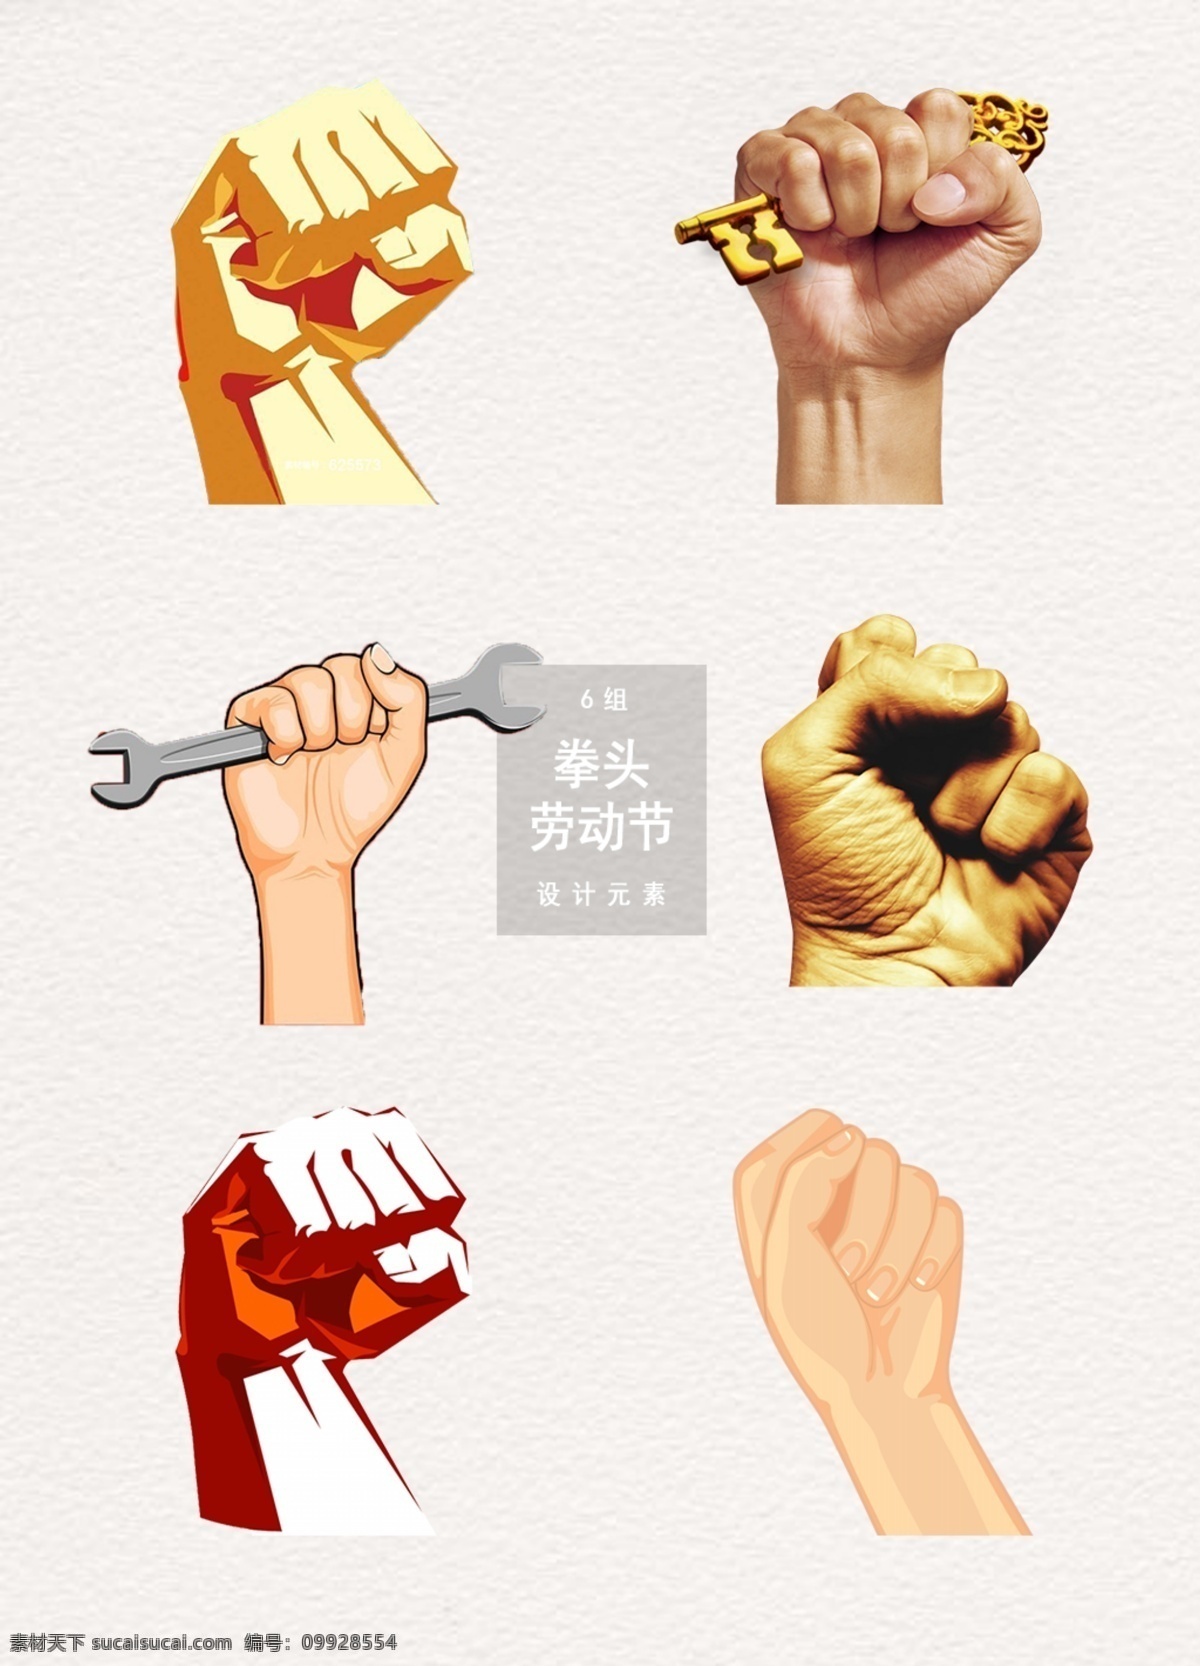 劳动节 拳头 力量 展示设计 图案 劳动 拳头素材